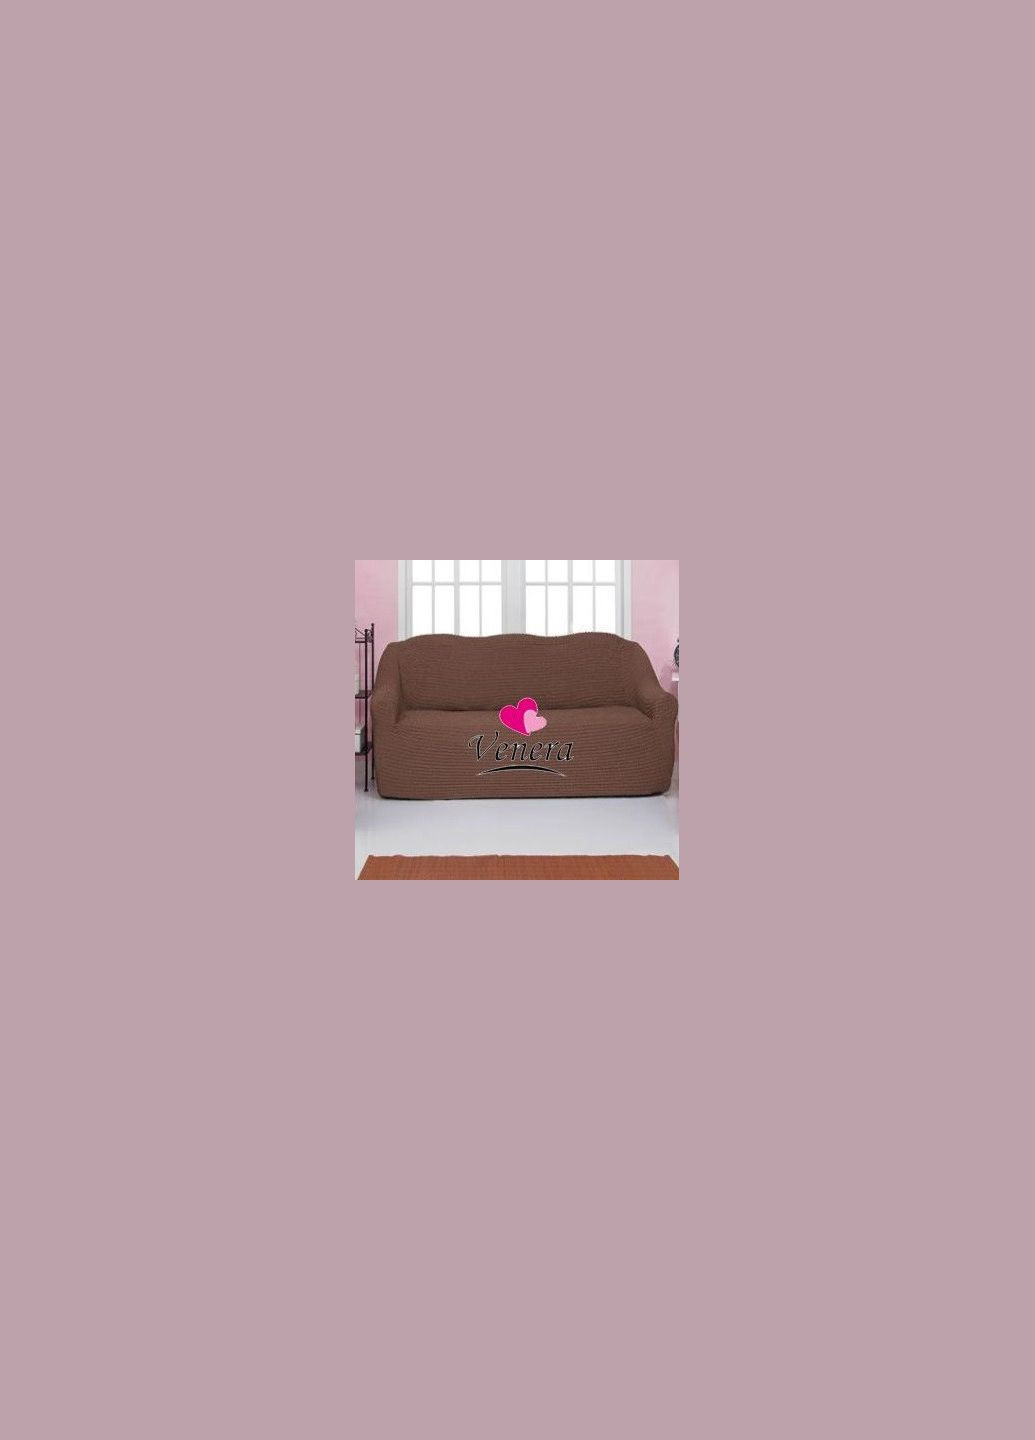 Чехол натяжной на трехместный диван без оборки 28-202 Серо-коричневый Venera (268998121)